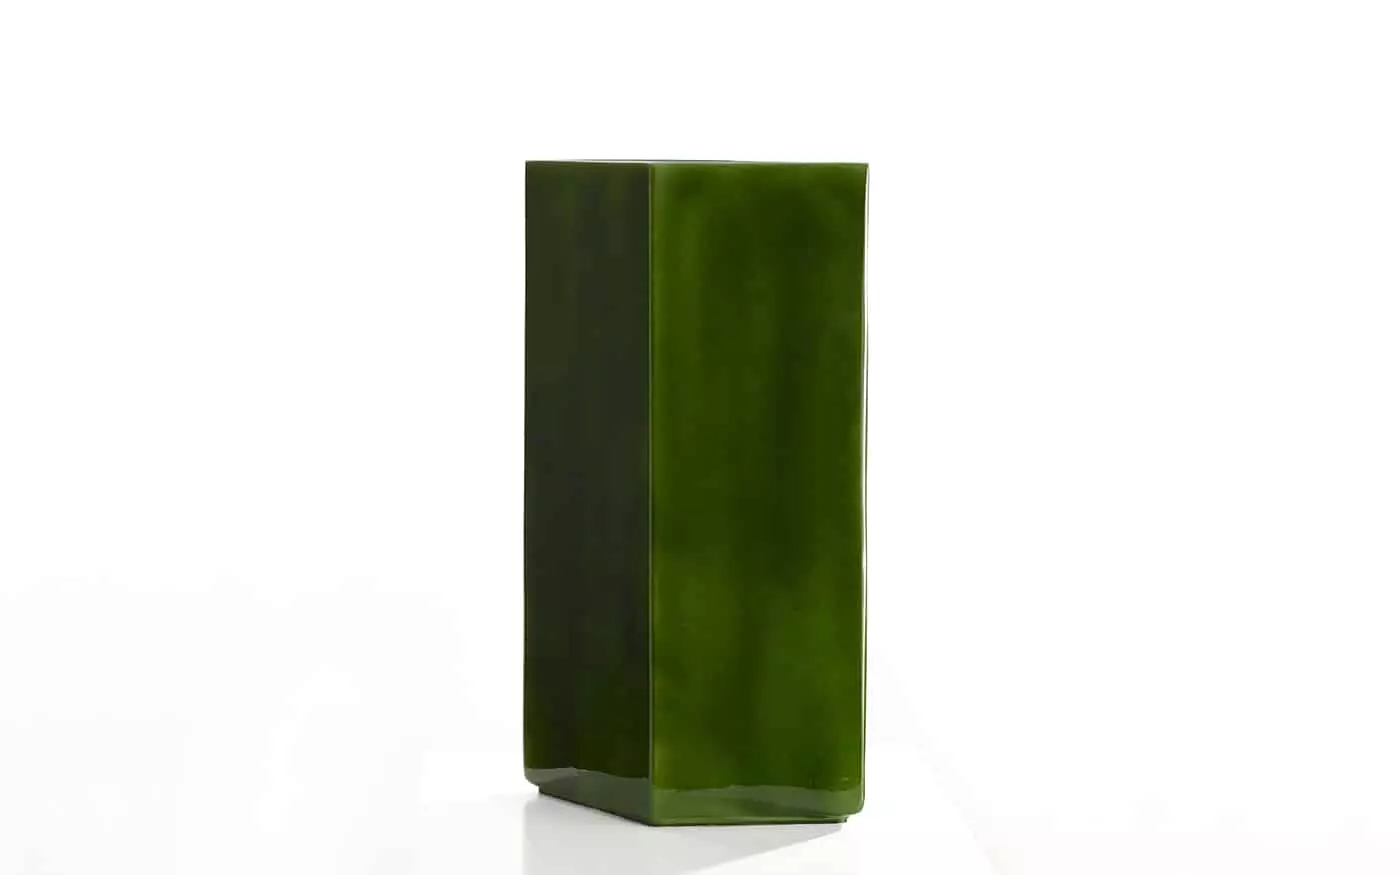 Vase Losange 84 green - Ronan & Erwan Bouroullec - Jewellery - Galerie kreo